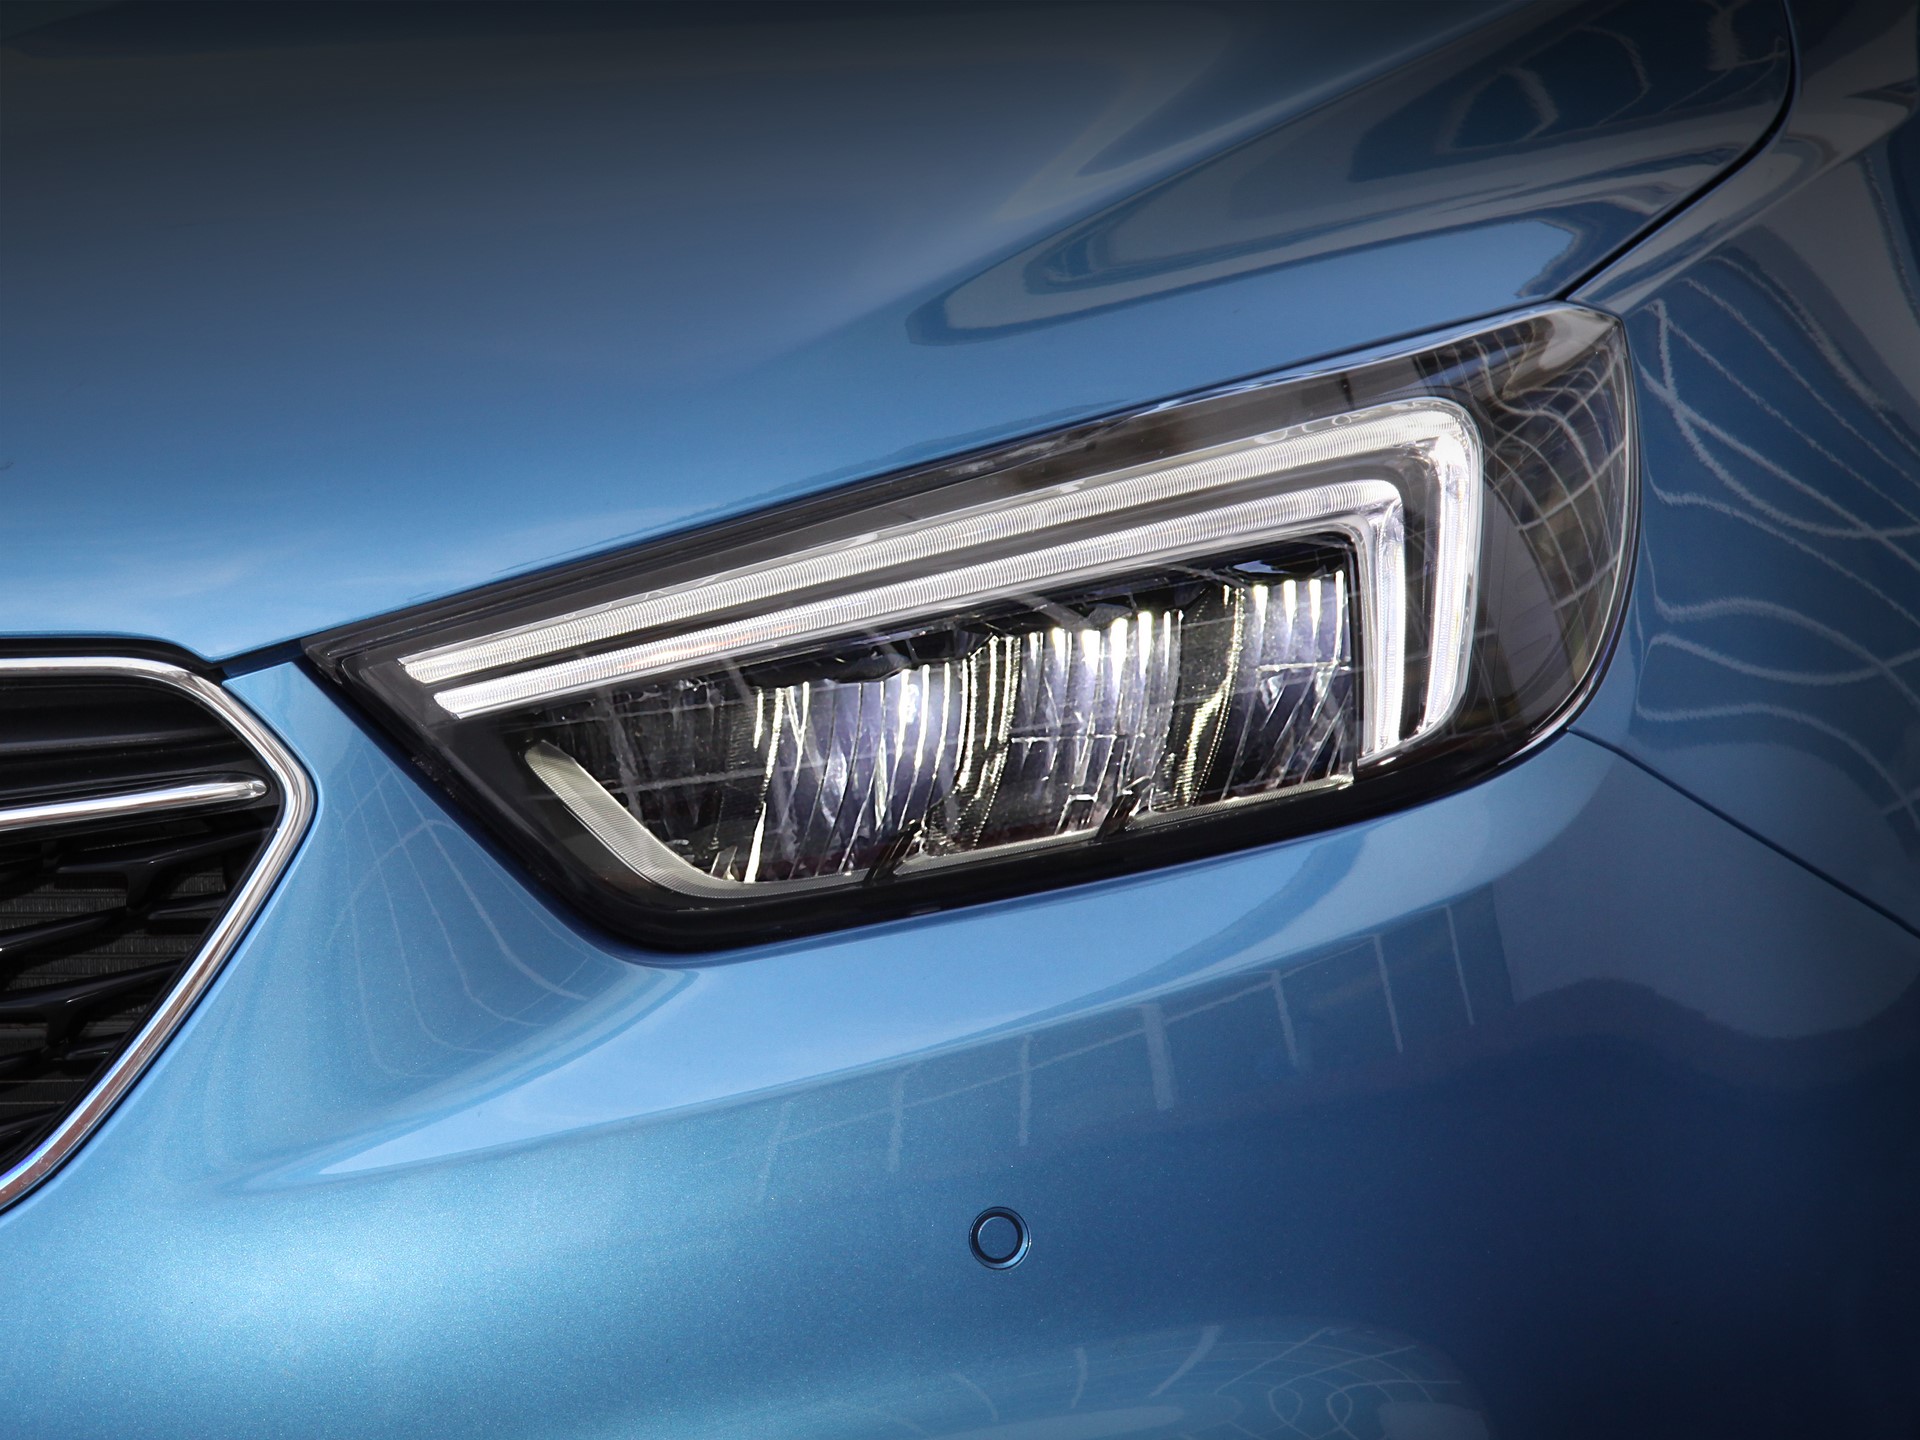 Opel zastosował w modelach Mokka i Zafira oświetlenie typu LED